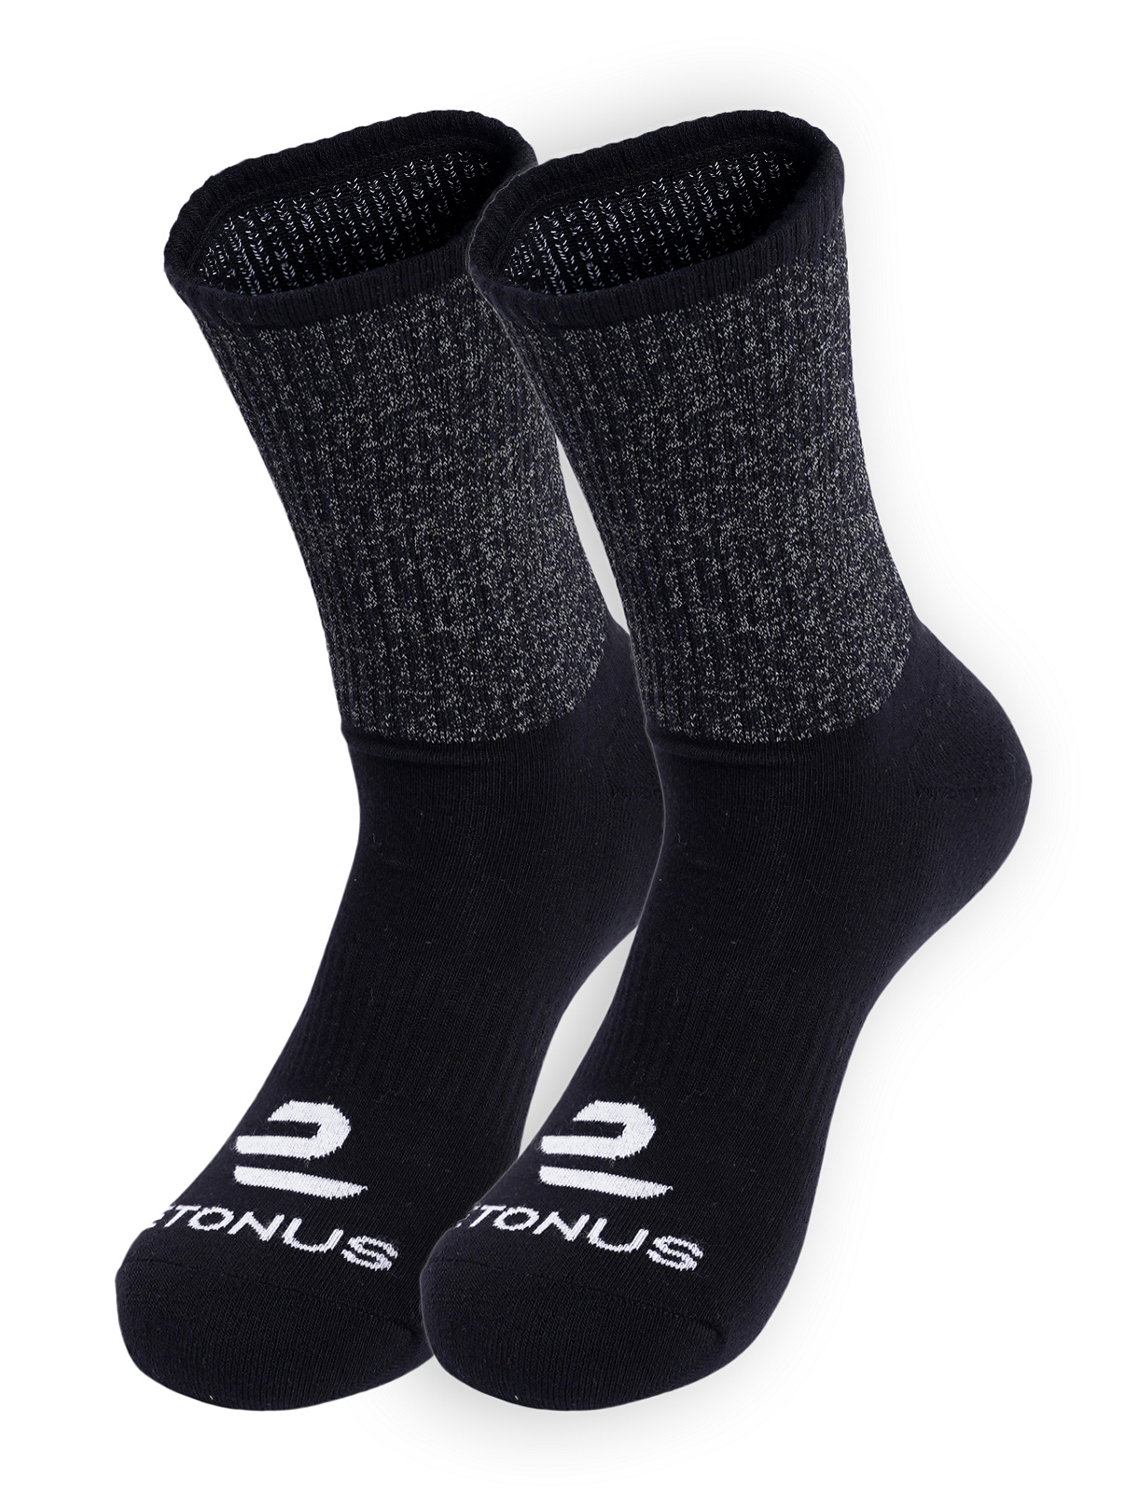 Комплект носков унисекс Etonus Reflective черных 37-43, 2 пары